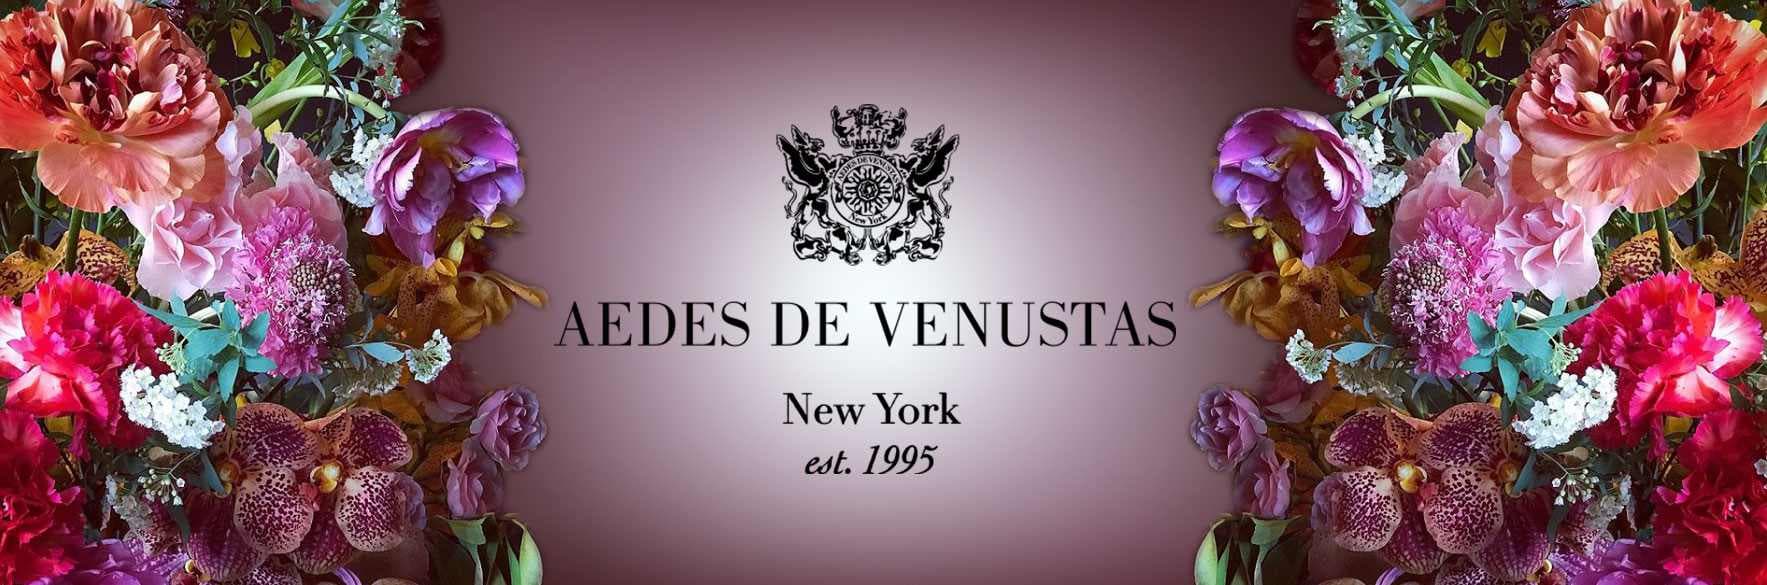 عطر ادس د ونوستاس AEDES DE VENUSTAS با رایحه جادویی